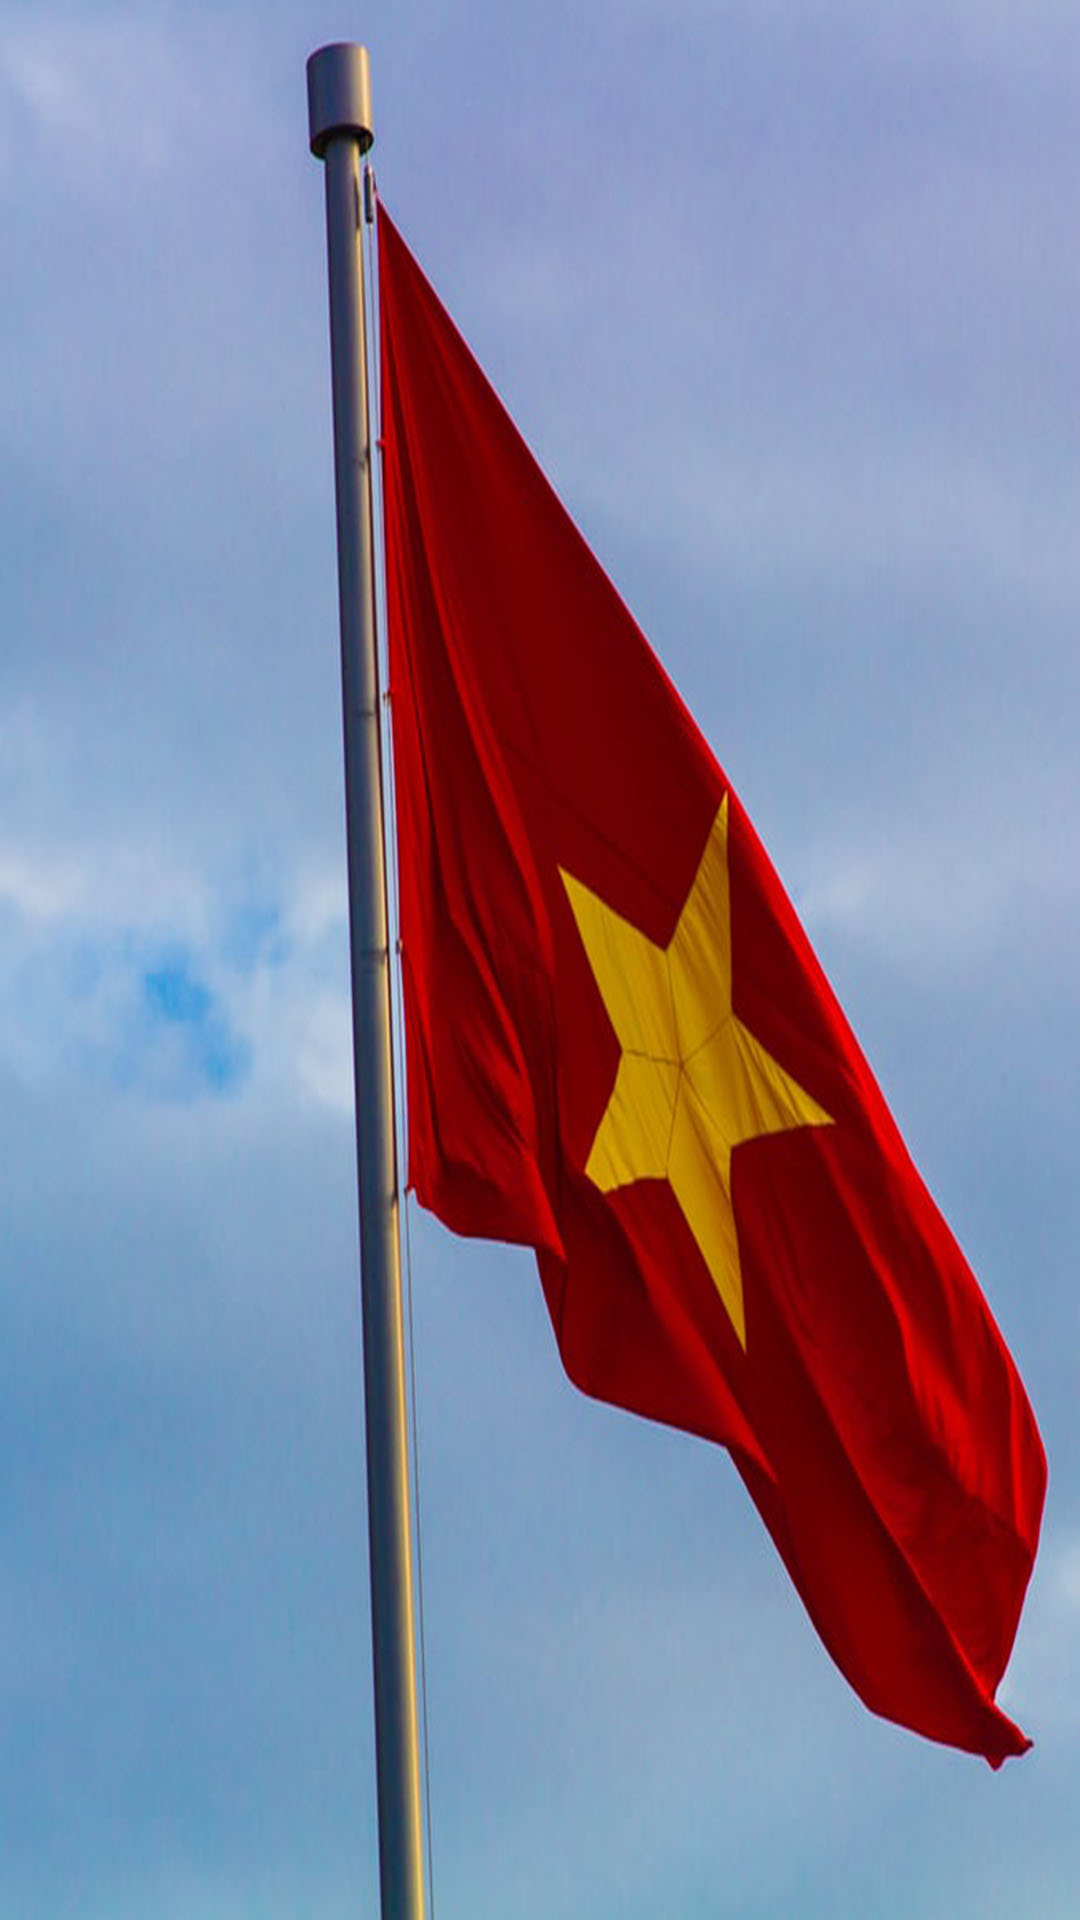 Tự do: Sự tự do là một giá trị vô giá trên thế giới và đối với Việt Nam cũng không ngoại lệ. Tự do trong học tập, làm việc, đào tạo chuyên môn, tín ngưỡng, tình dục và truyền thông được đảm bảo và phát triển. Hãy đến để cảm nhận sự tự do đó cho mình.